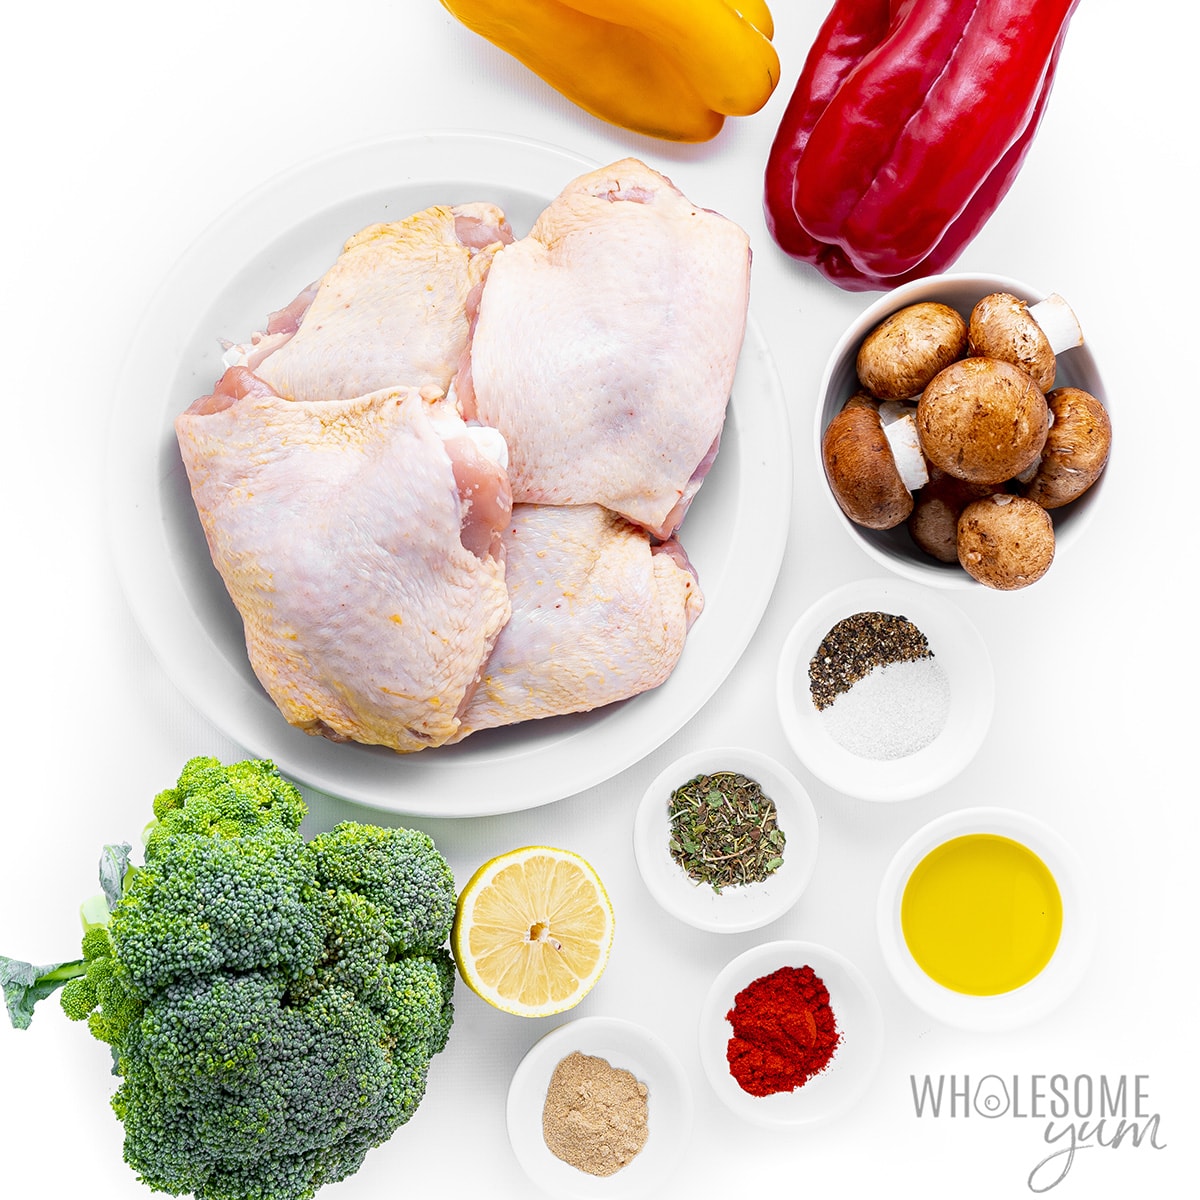 Sheet pan chicken thigh and veggies ingredients.